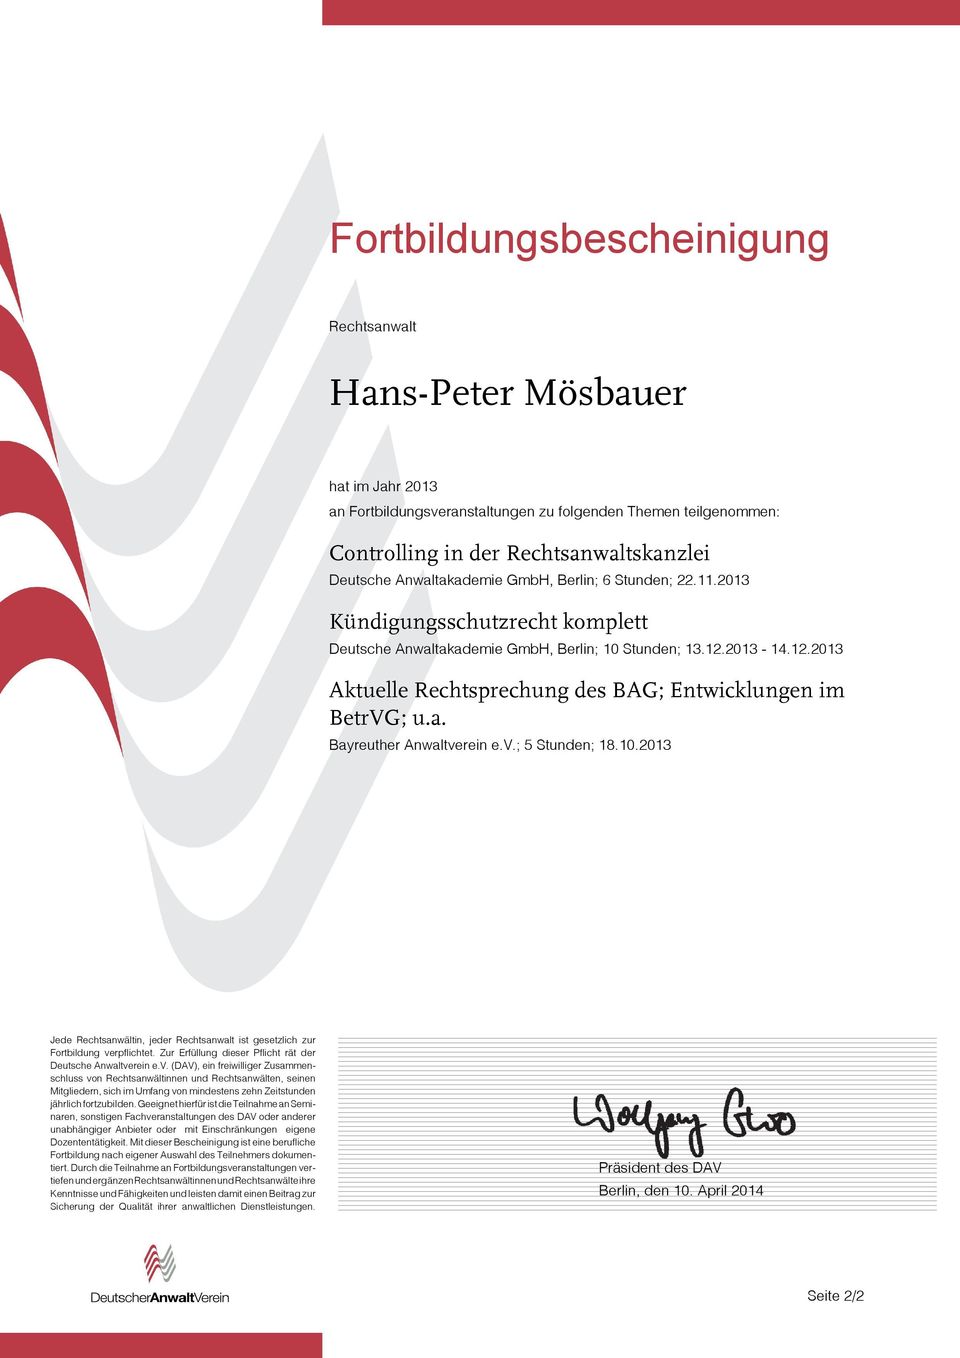 2013 Kündigungsschutzrecht komplett Deutsche Anwaltakademie GmbH, Berlin; 10 Stunden; 13.